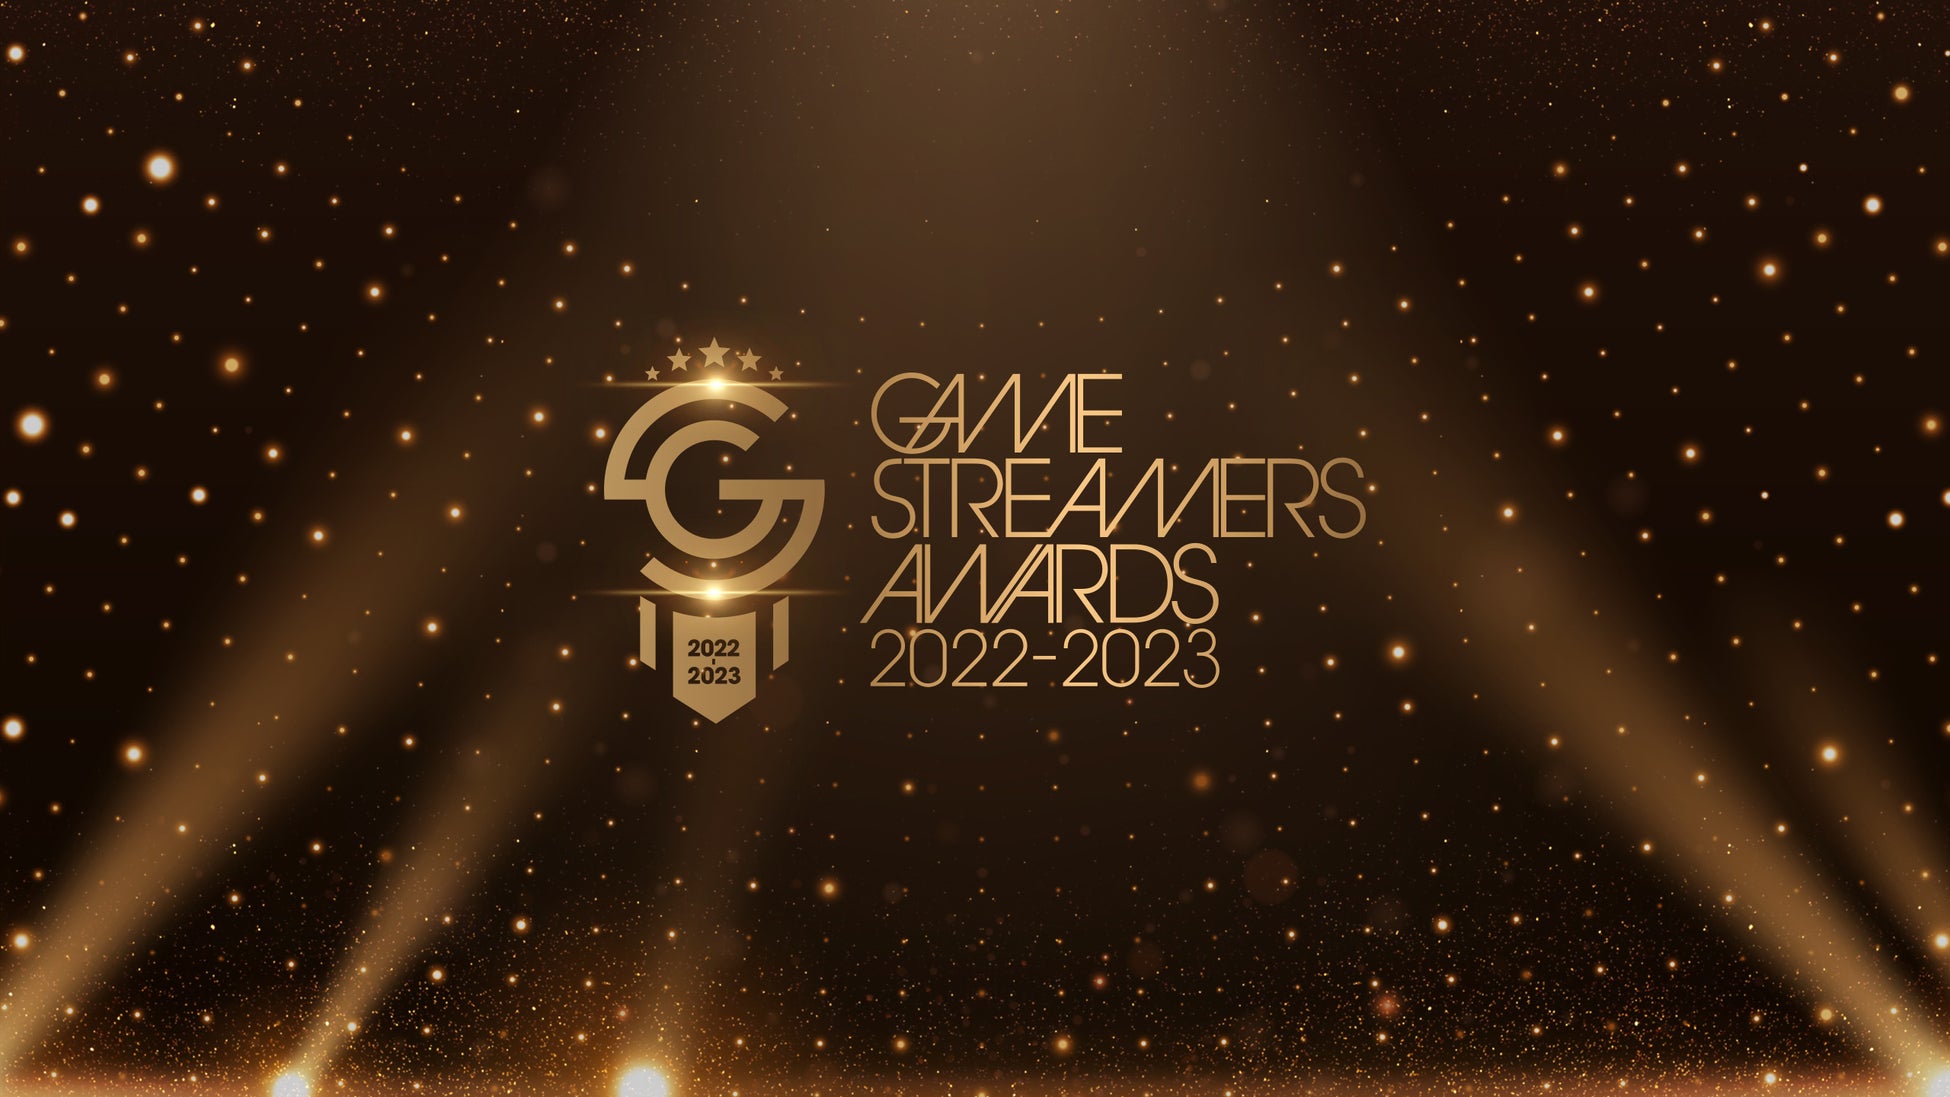 今、最も旬で活躍しているストリーマーを表彰し称える祭典『GAME STREAMERS AWARDS 2022-2023』開催についてのお知らせ